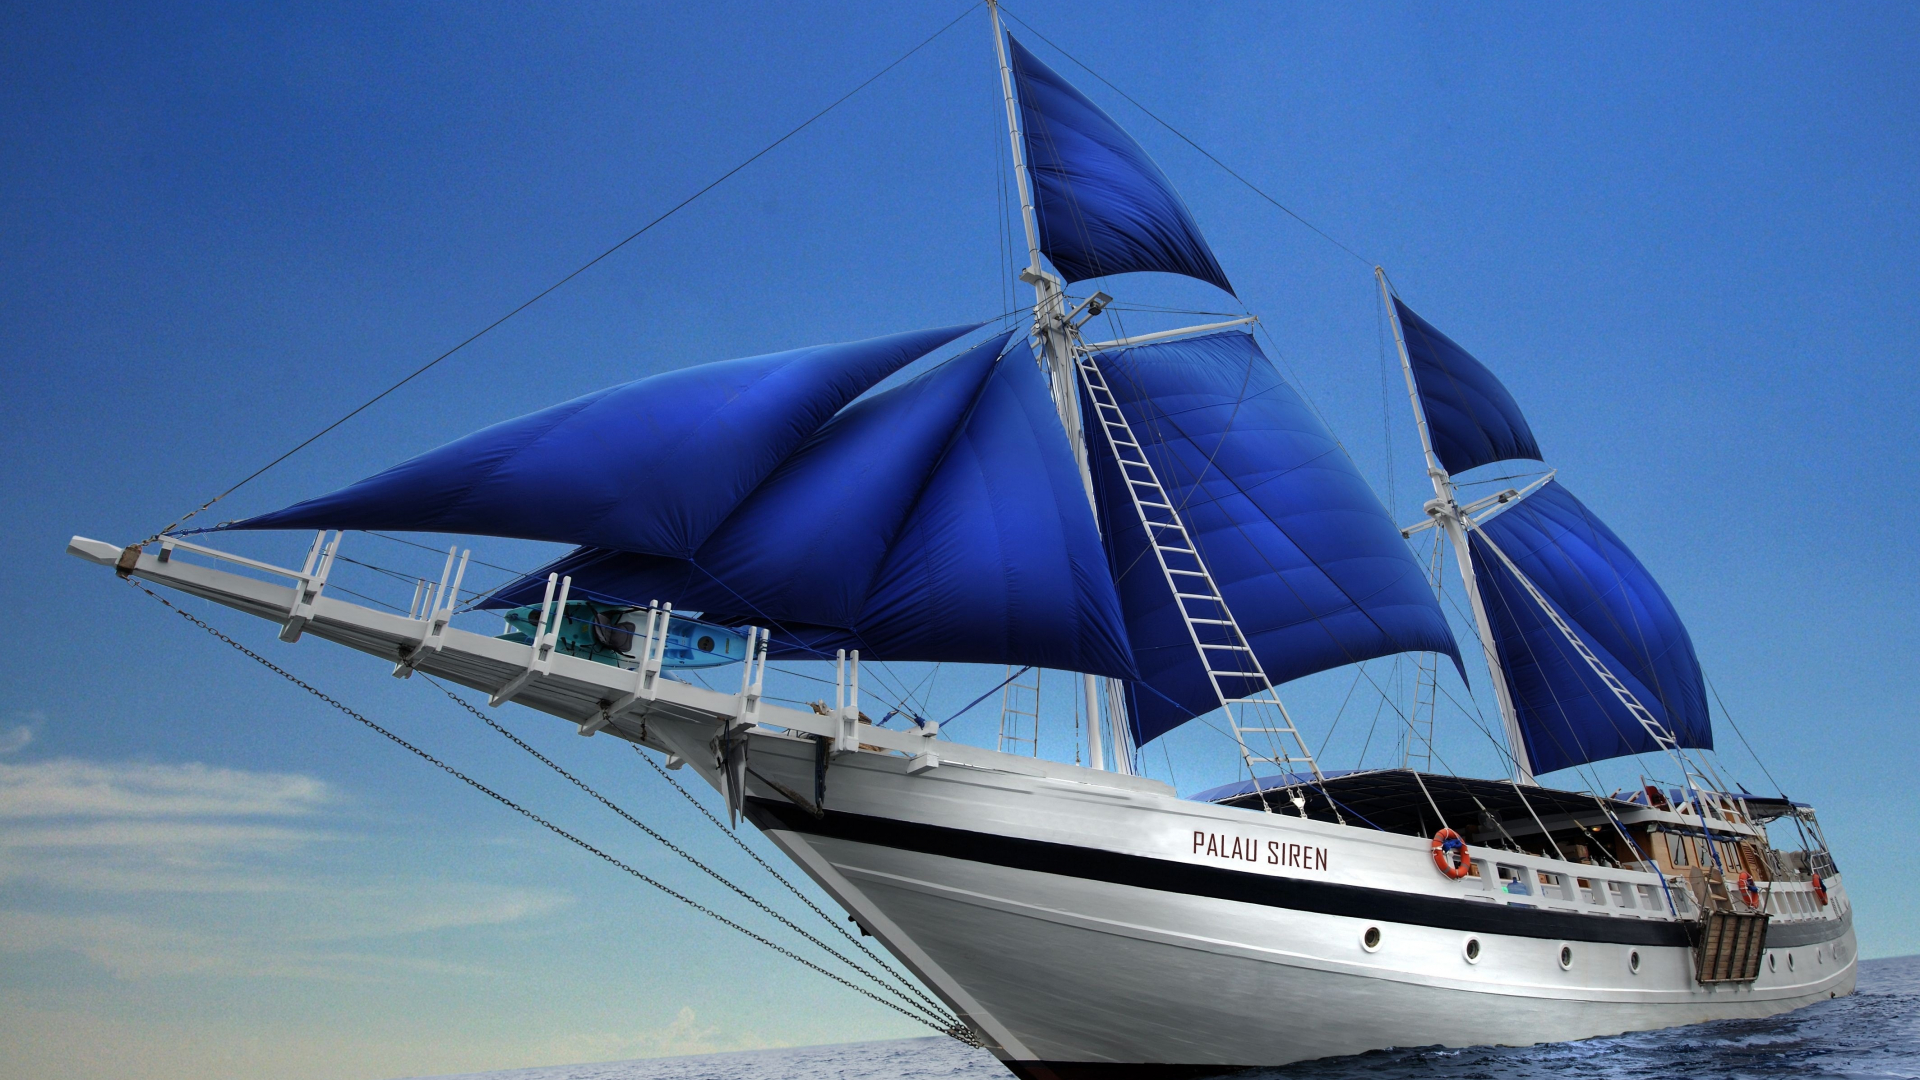 والپیپر فوق العاده قشنگ از قایق بزرگ با بادبان های آبی کاربنی 